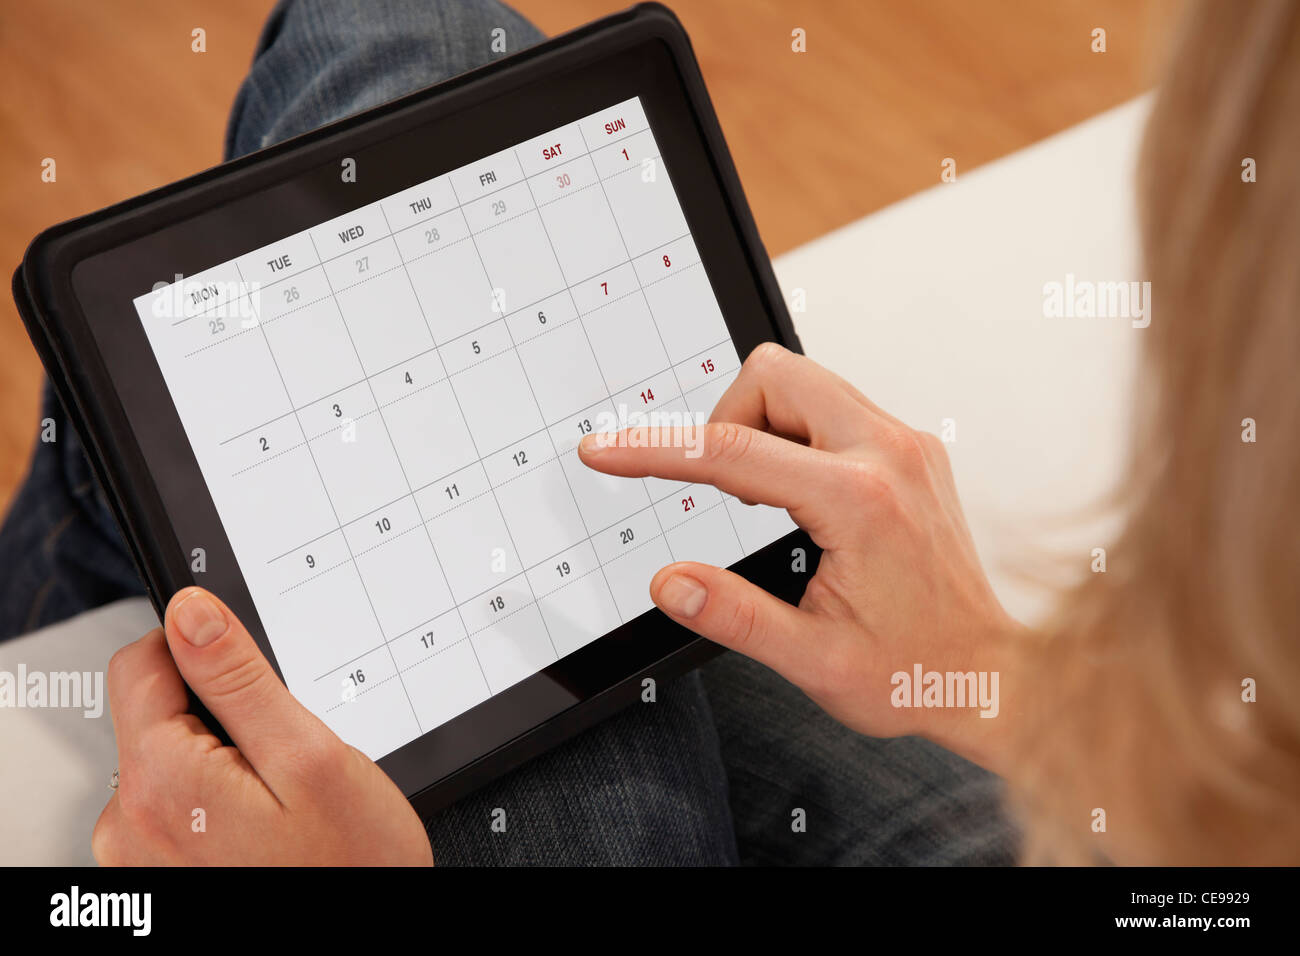 Estados Unidos, Illinois, Metamora, cerca de la mujer utilizando el calendario en tableta digital Foto de stock